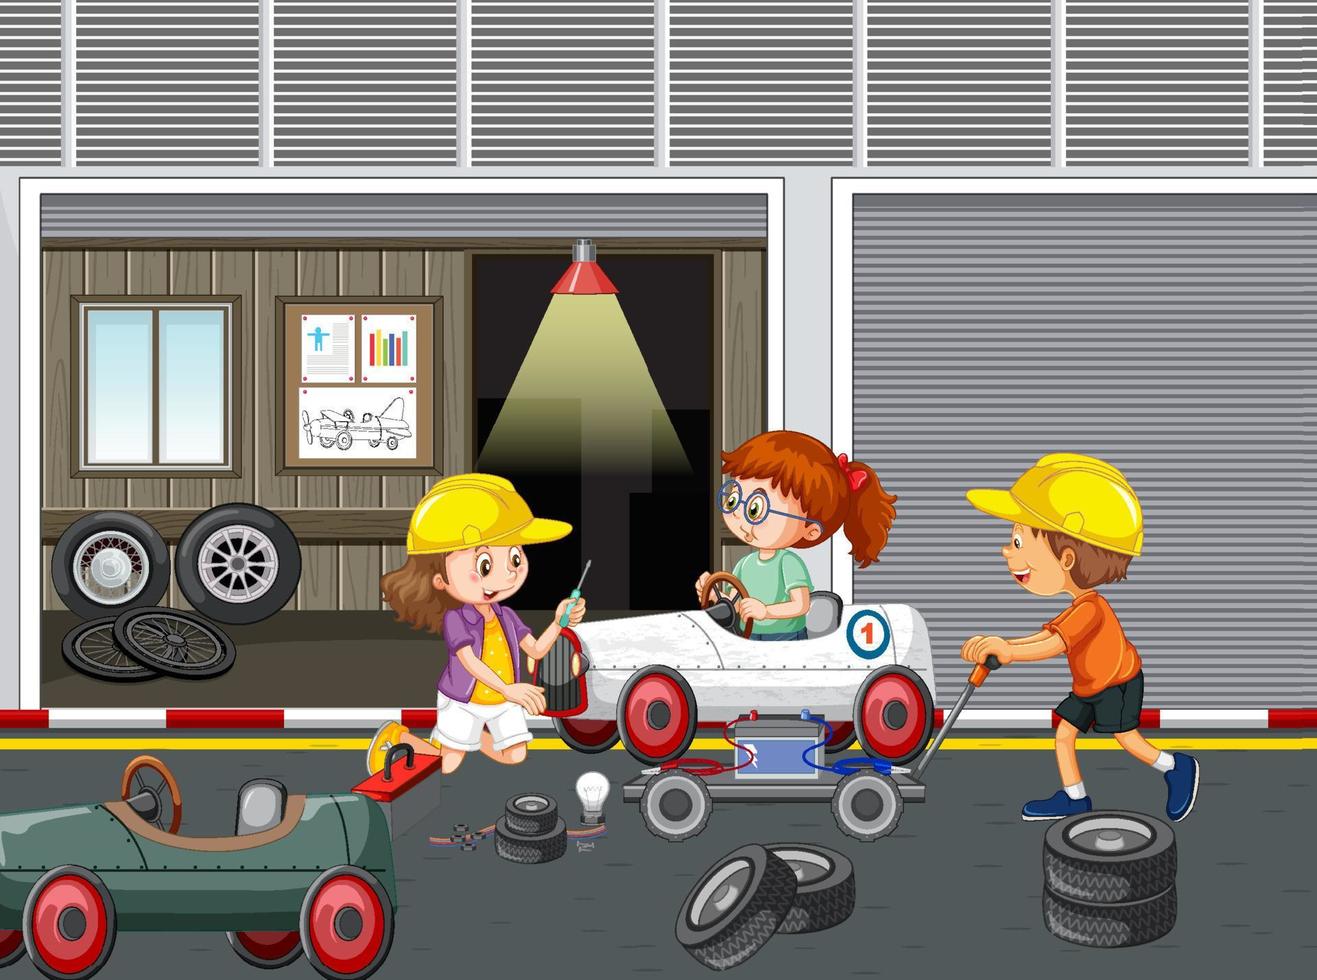 barn som reparerar en bil tillsammans i garaget vektor